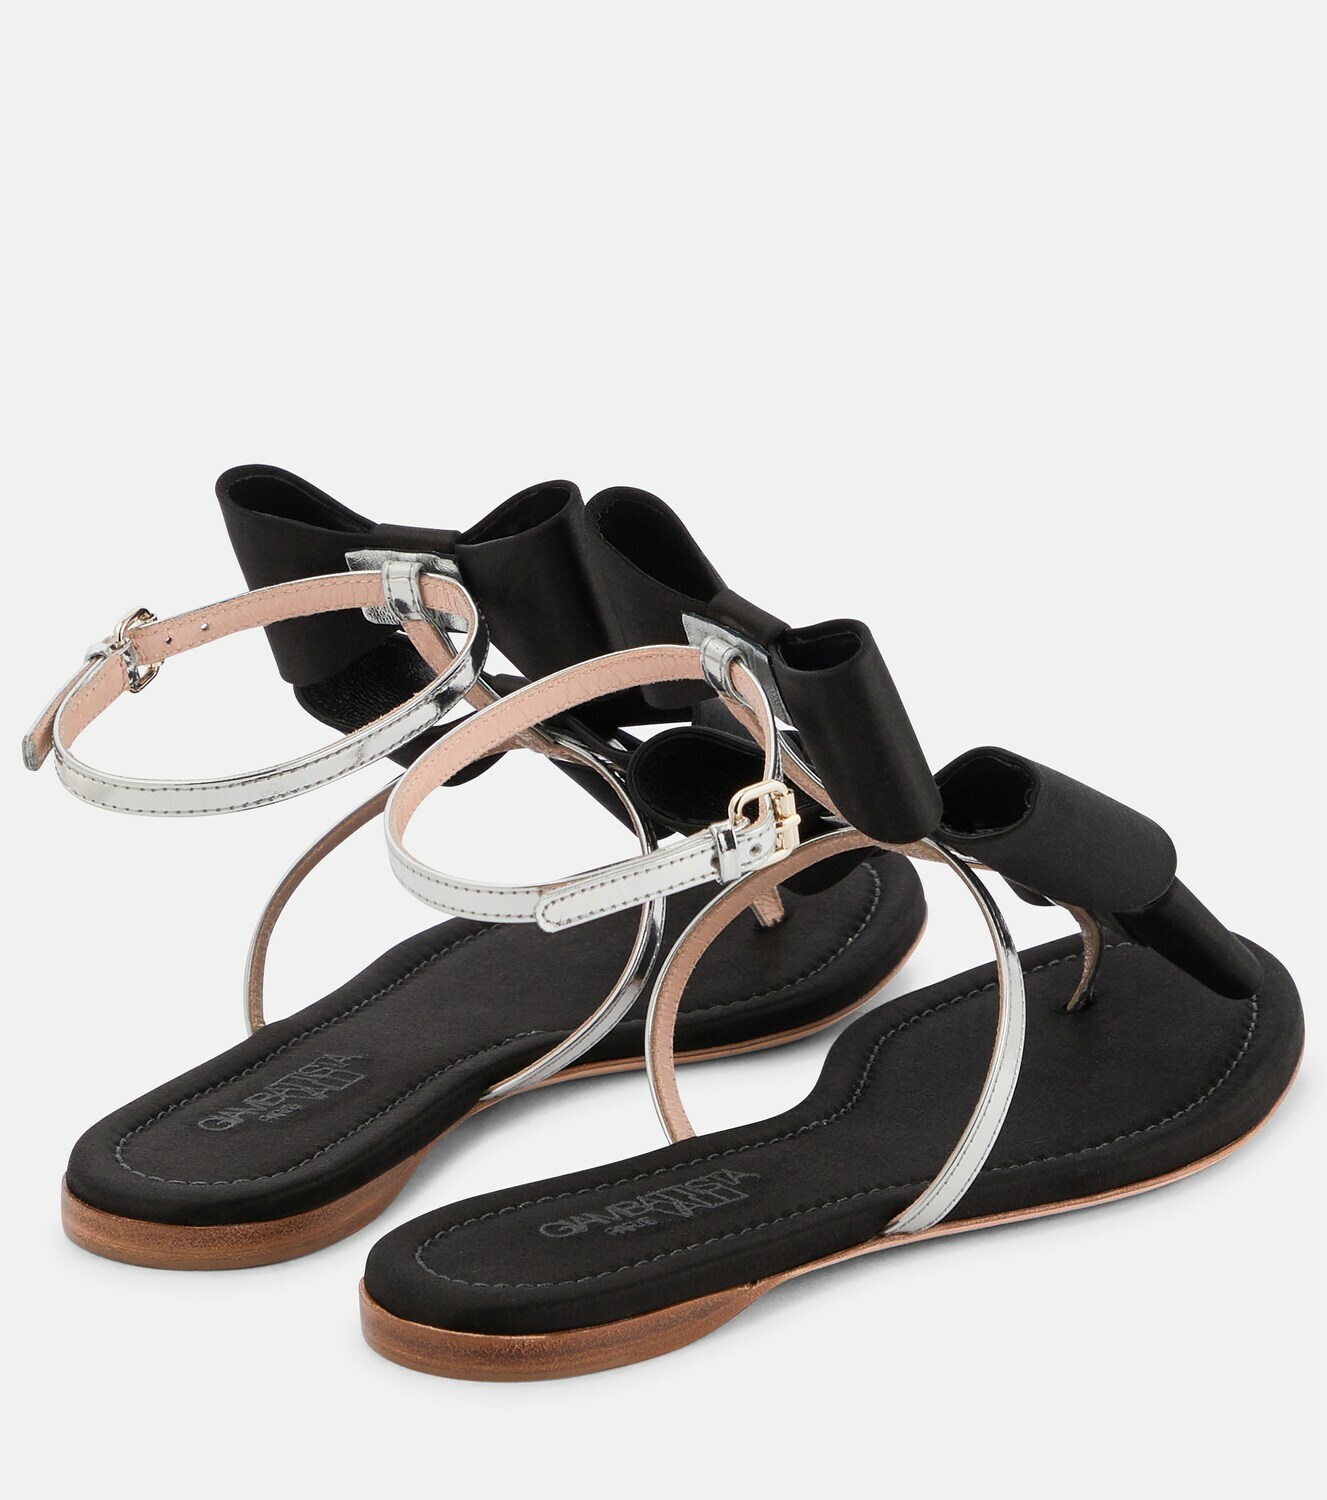 Giambattista Valli - Pop Bow satin and leather sandals Giambattista Valli